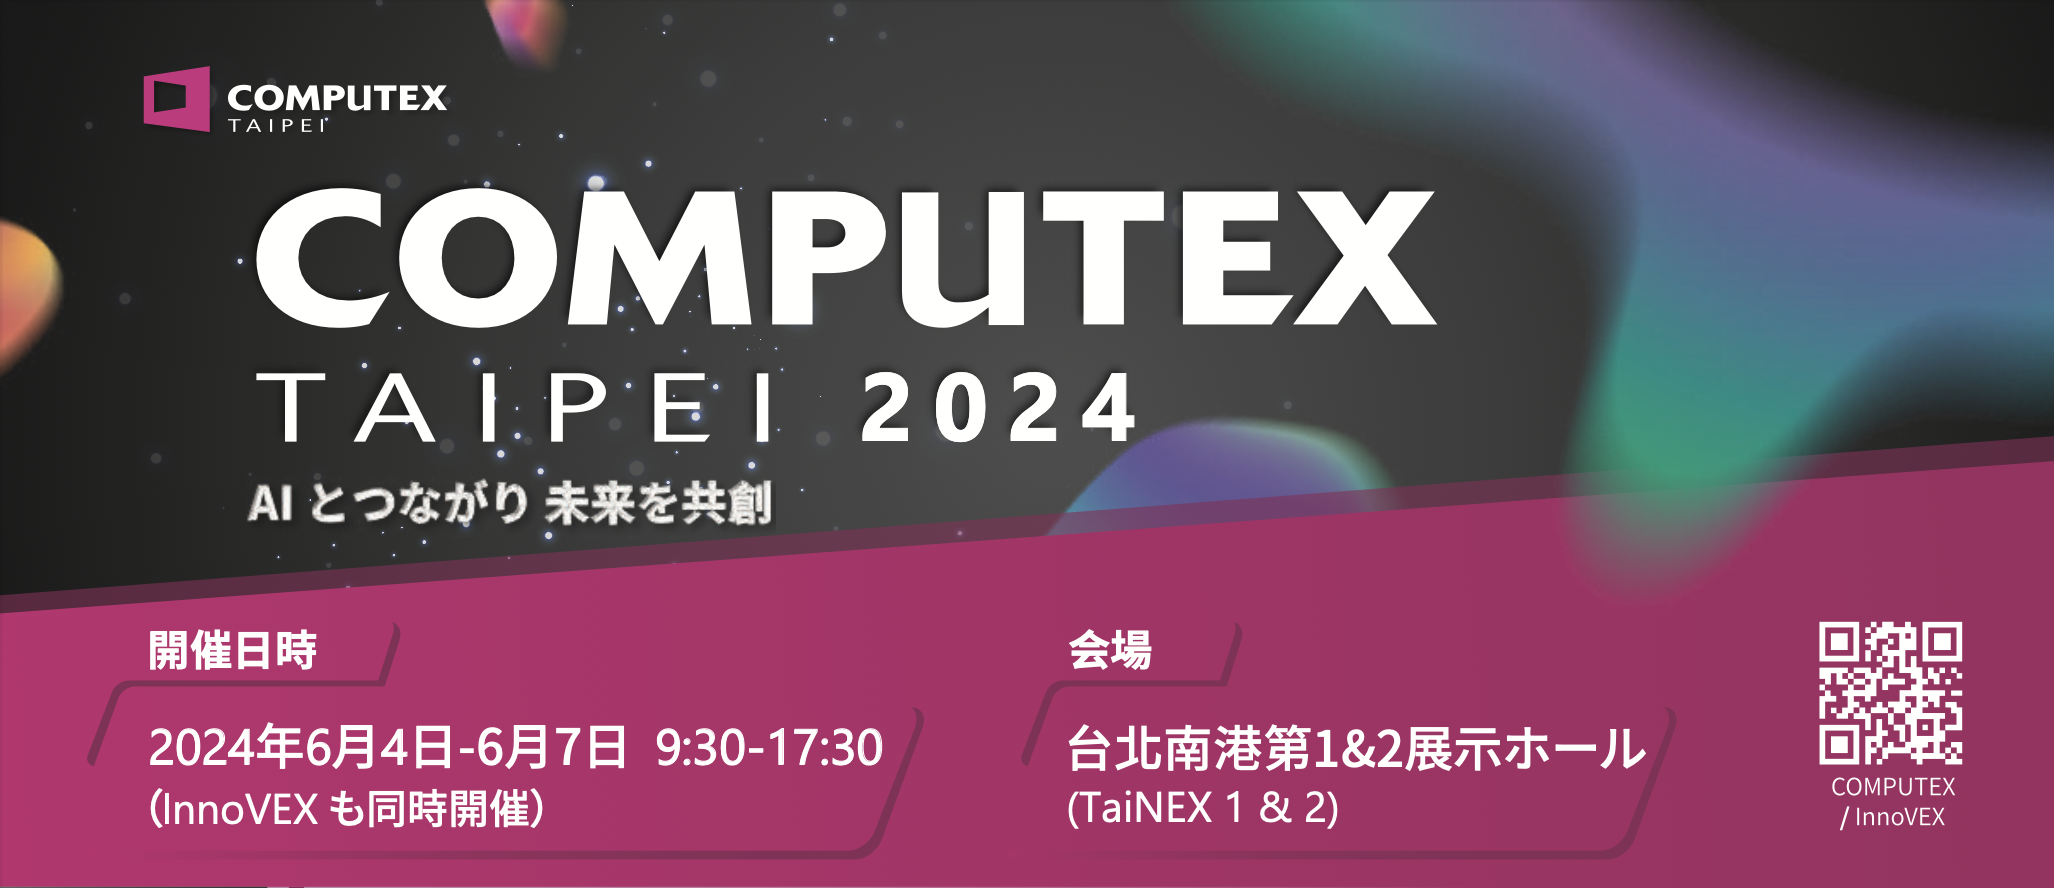 COMPUTEX 2024